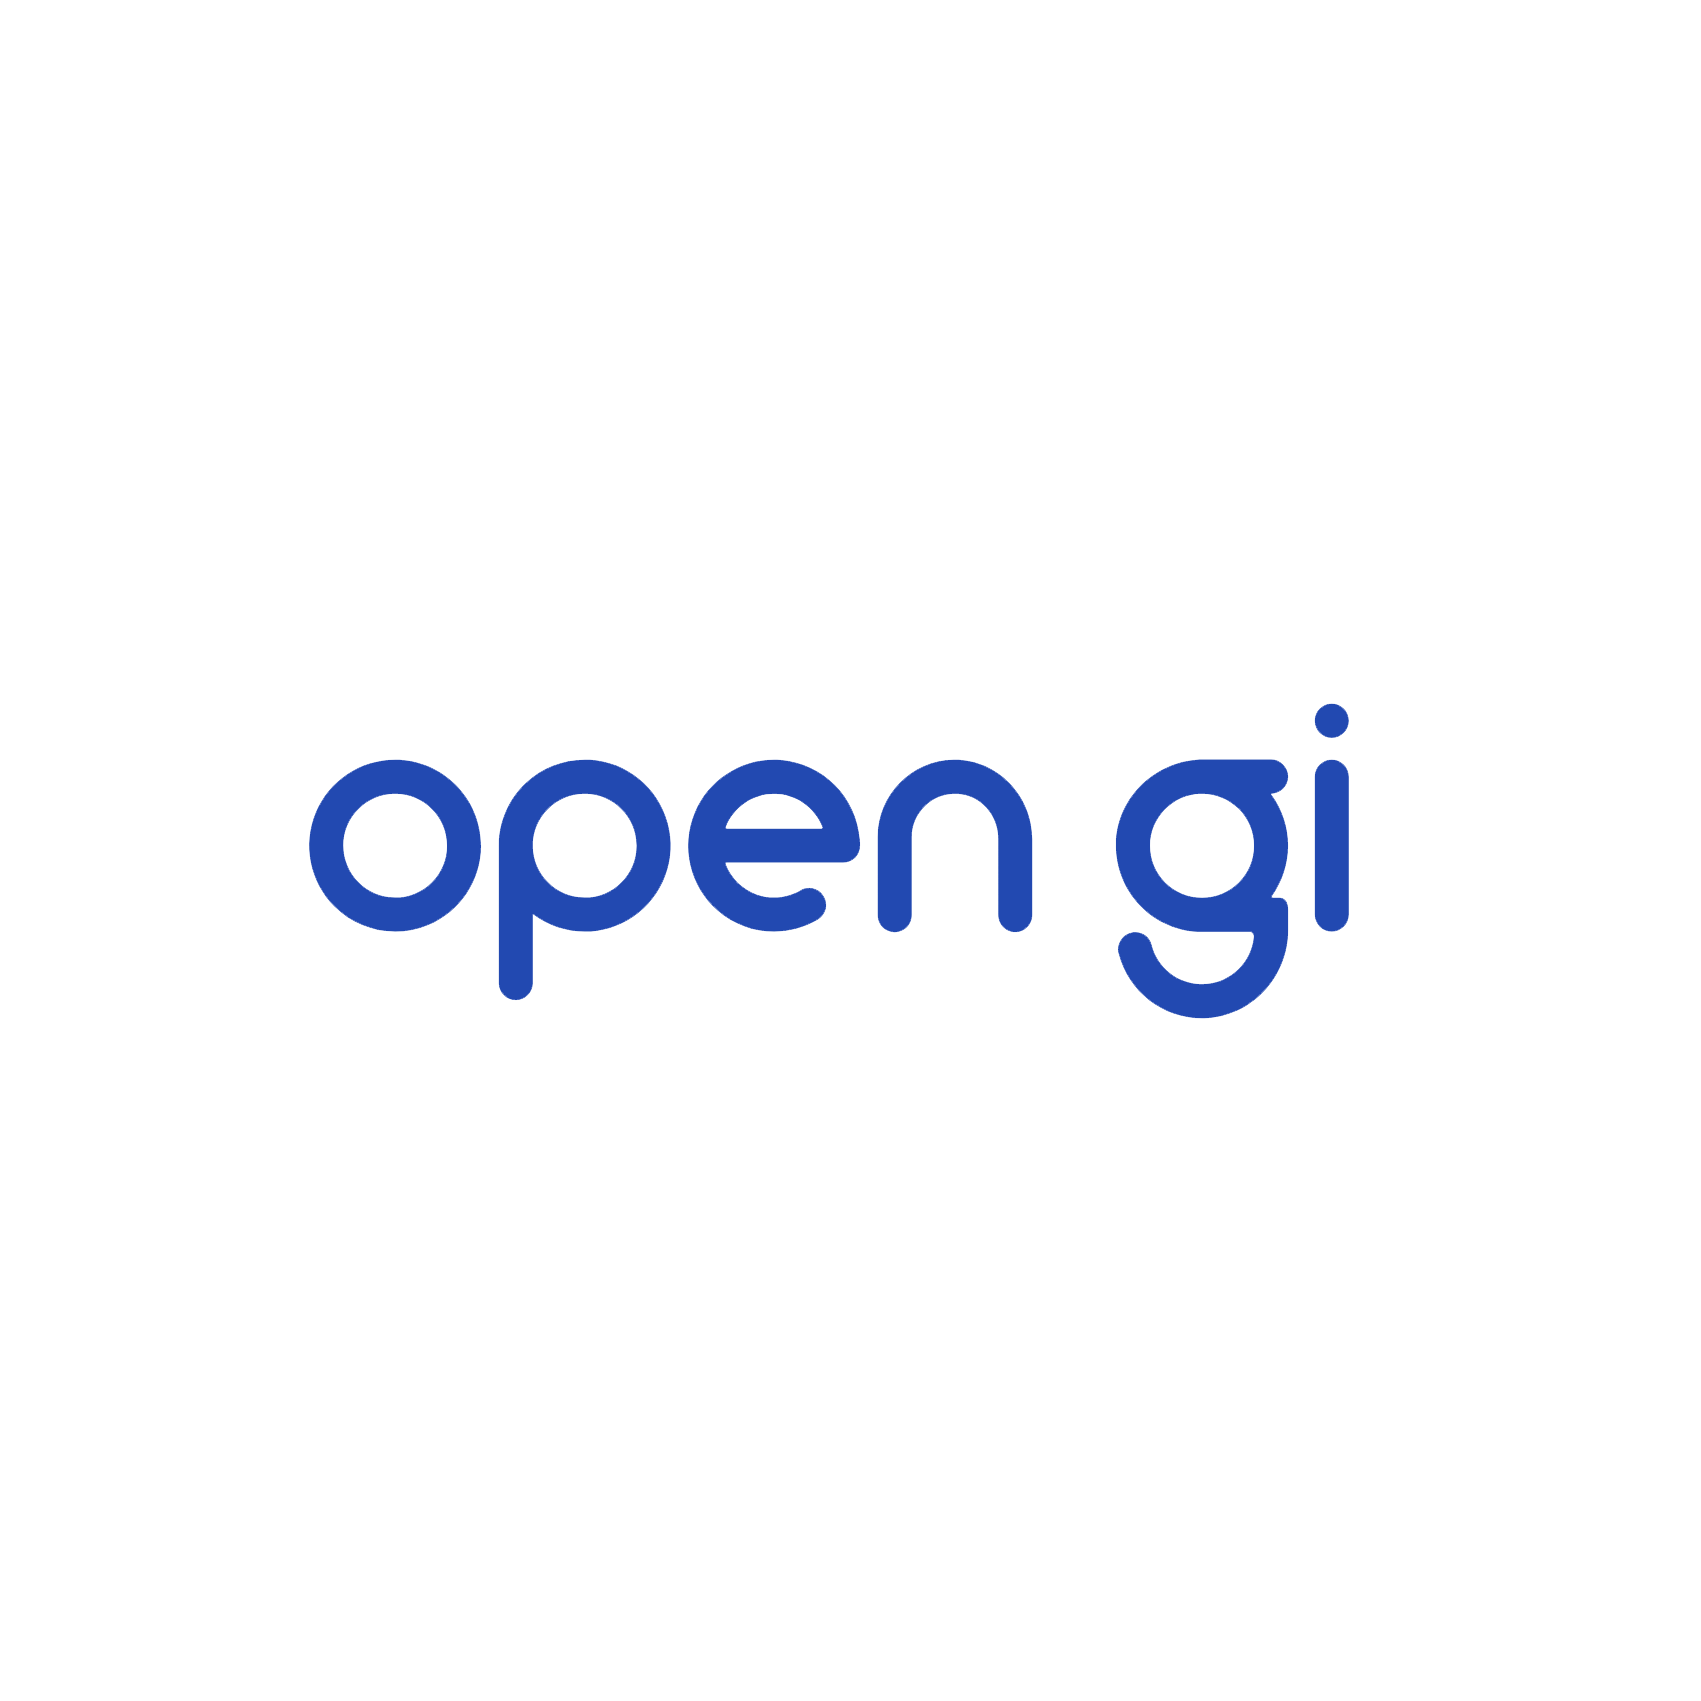 open gi